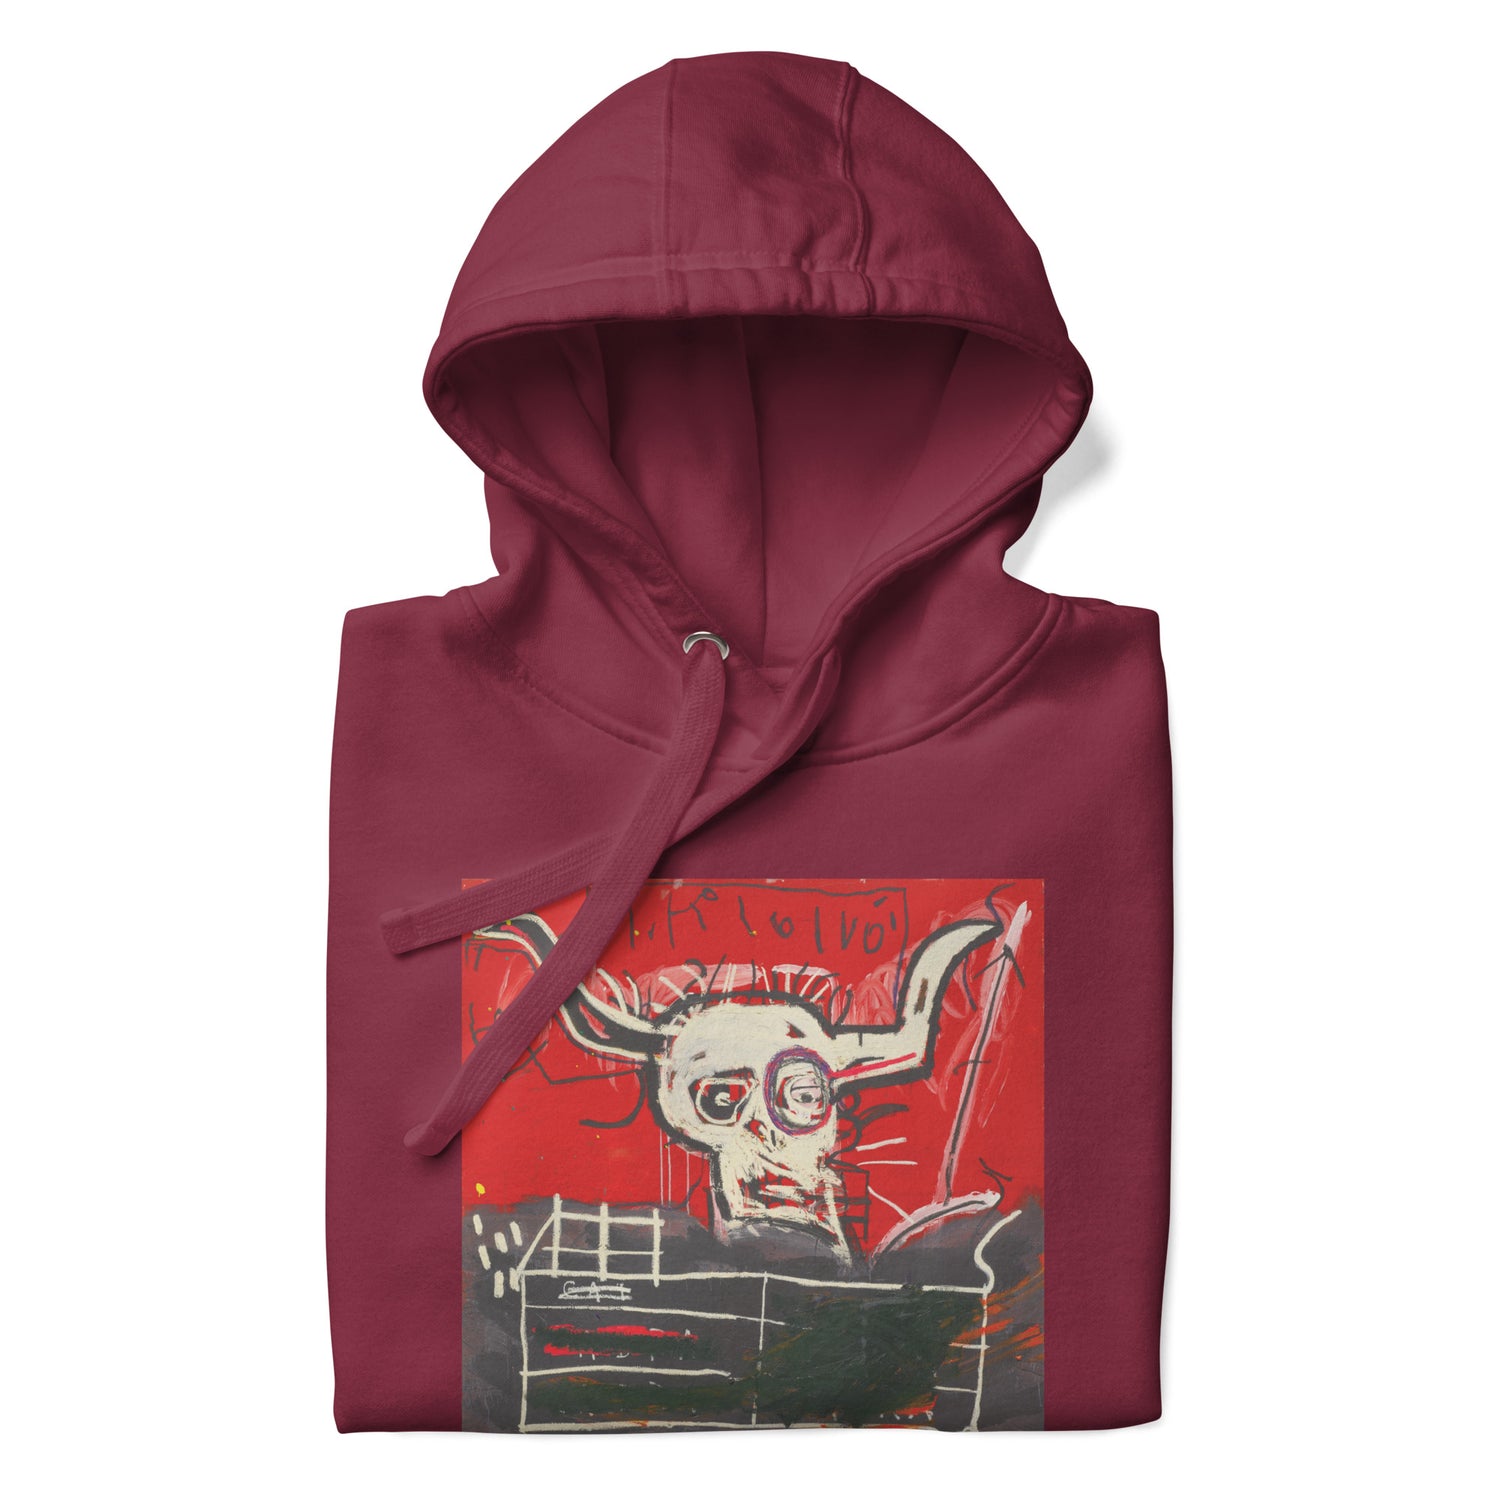 Jean-Michel Basquiat "Cabra" Artwork Printed Premium Streetwear Sweatshirt Hoodie Burgundy Red